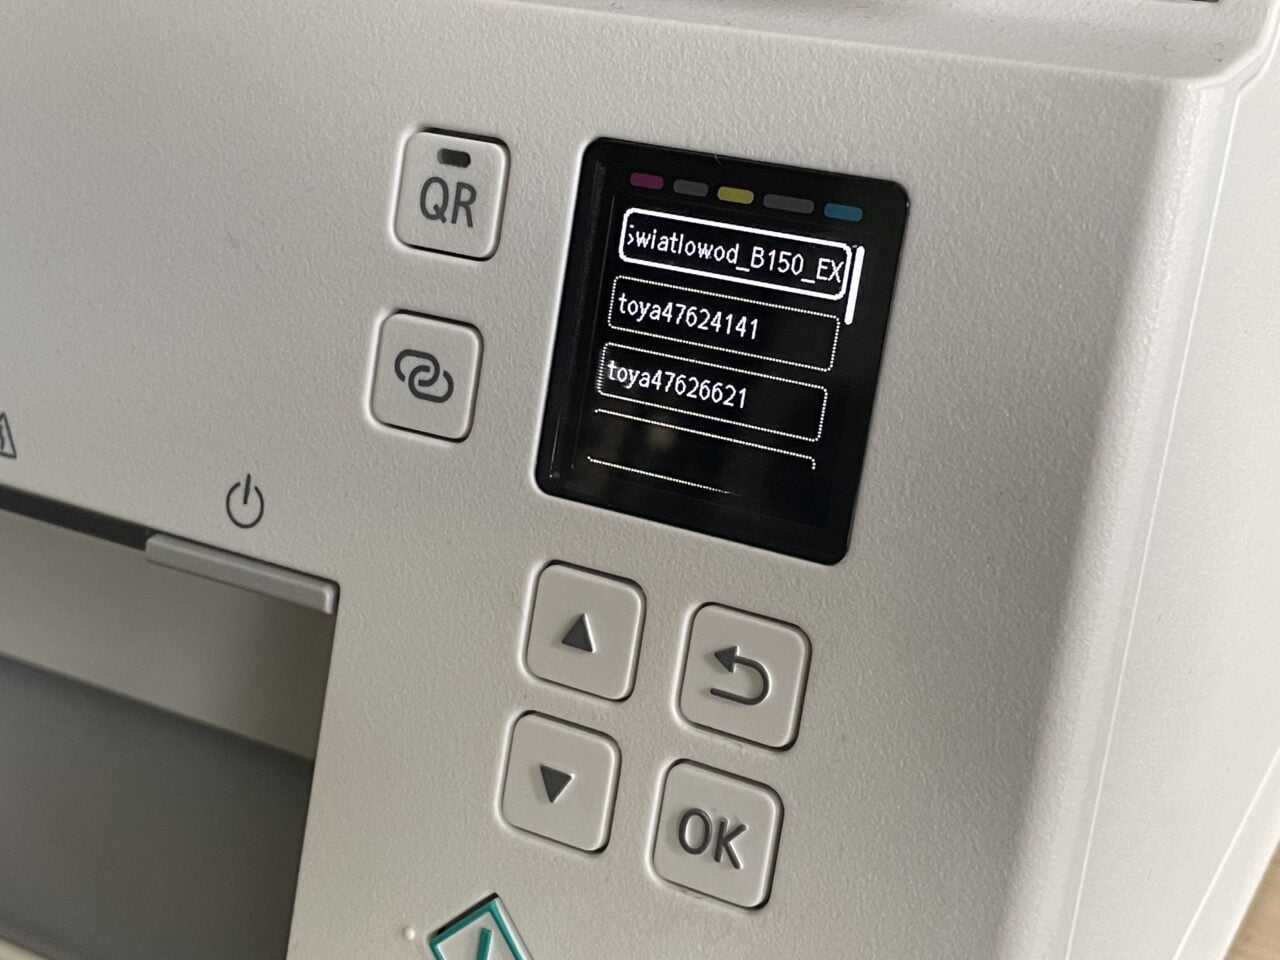 Panel sterowania urządzenia z kolorowym ekranem LCD wyświetlającym opcje menu w języku polskim, przyciski nawigacyjne oraz symbol QR. Jak zainstalować drukarkę Canon na przykładzie modelu Canon PIXma TS6351